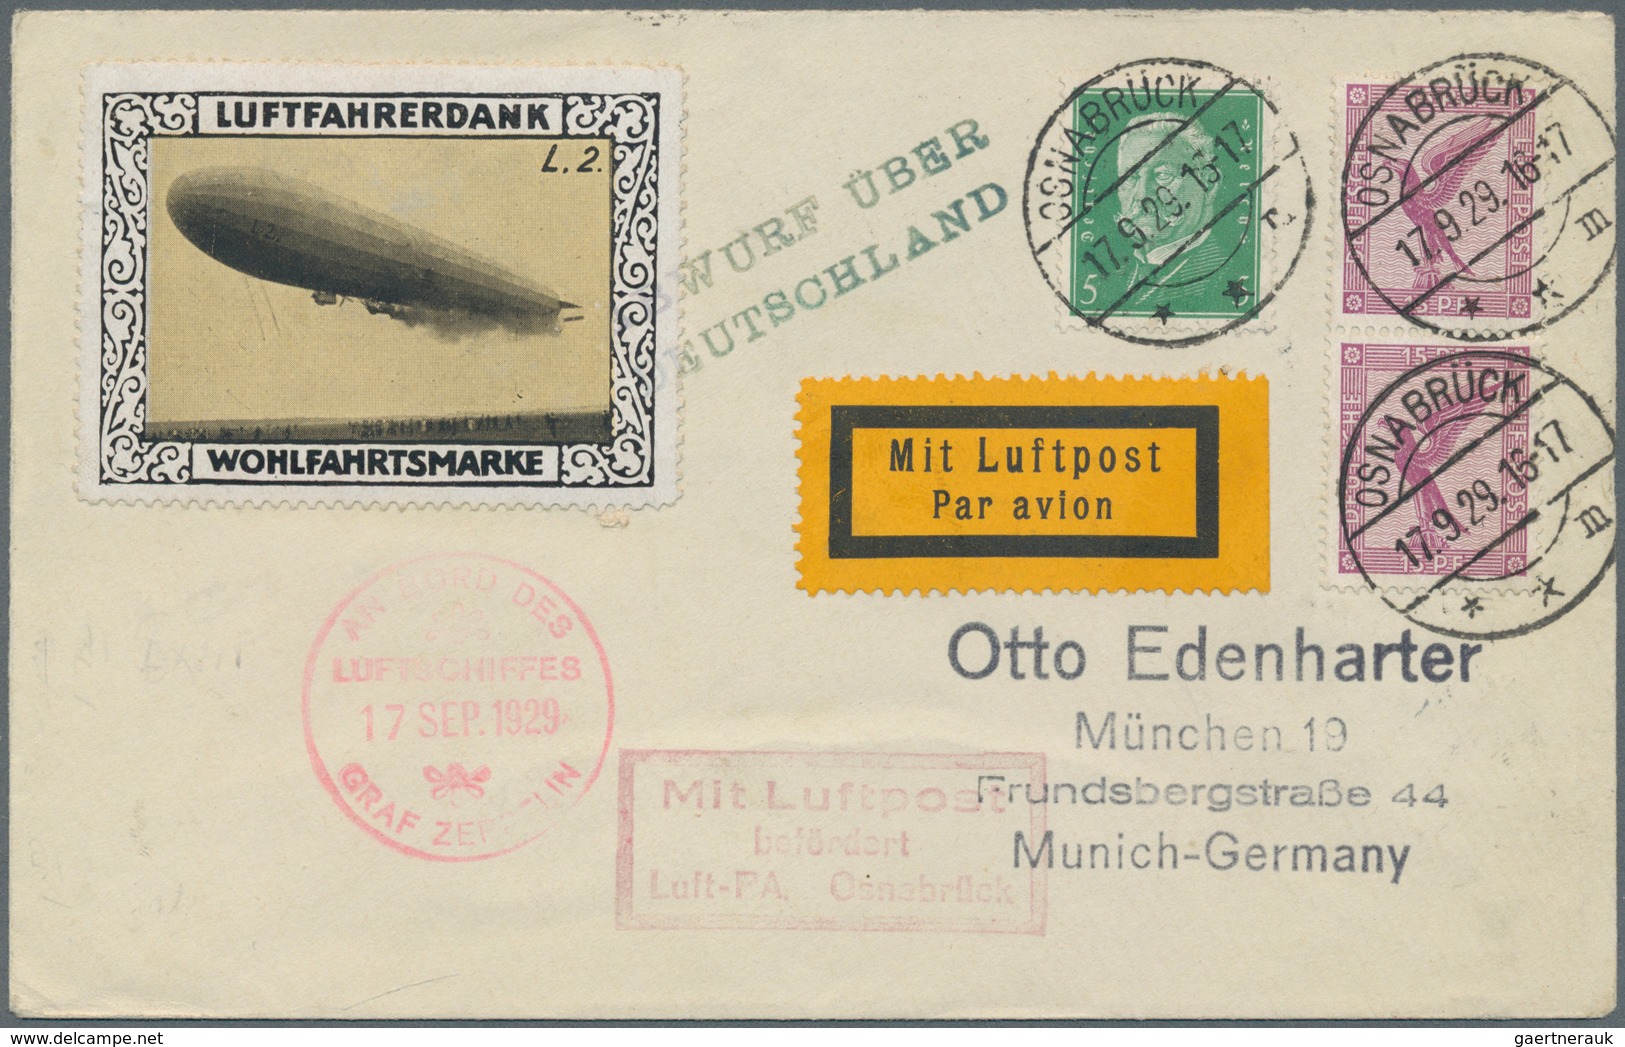 Zeppelinpost Deutschland: 1929. German Cover Flown On The Graf Zeppelin LZ127 Airship's 1929 Deutsch - Correo Aéreo & Zeppelin